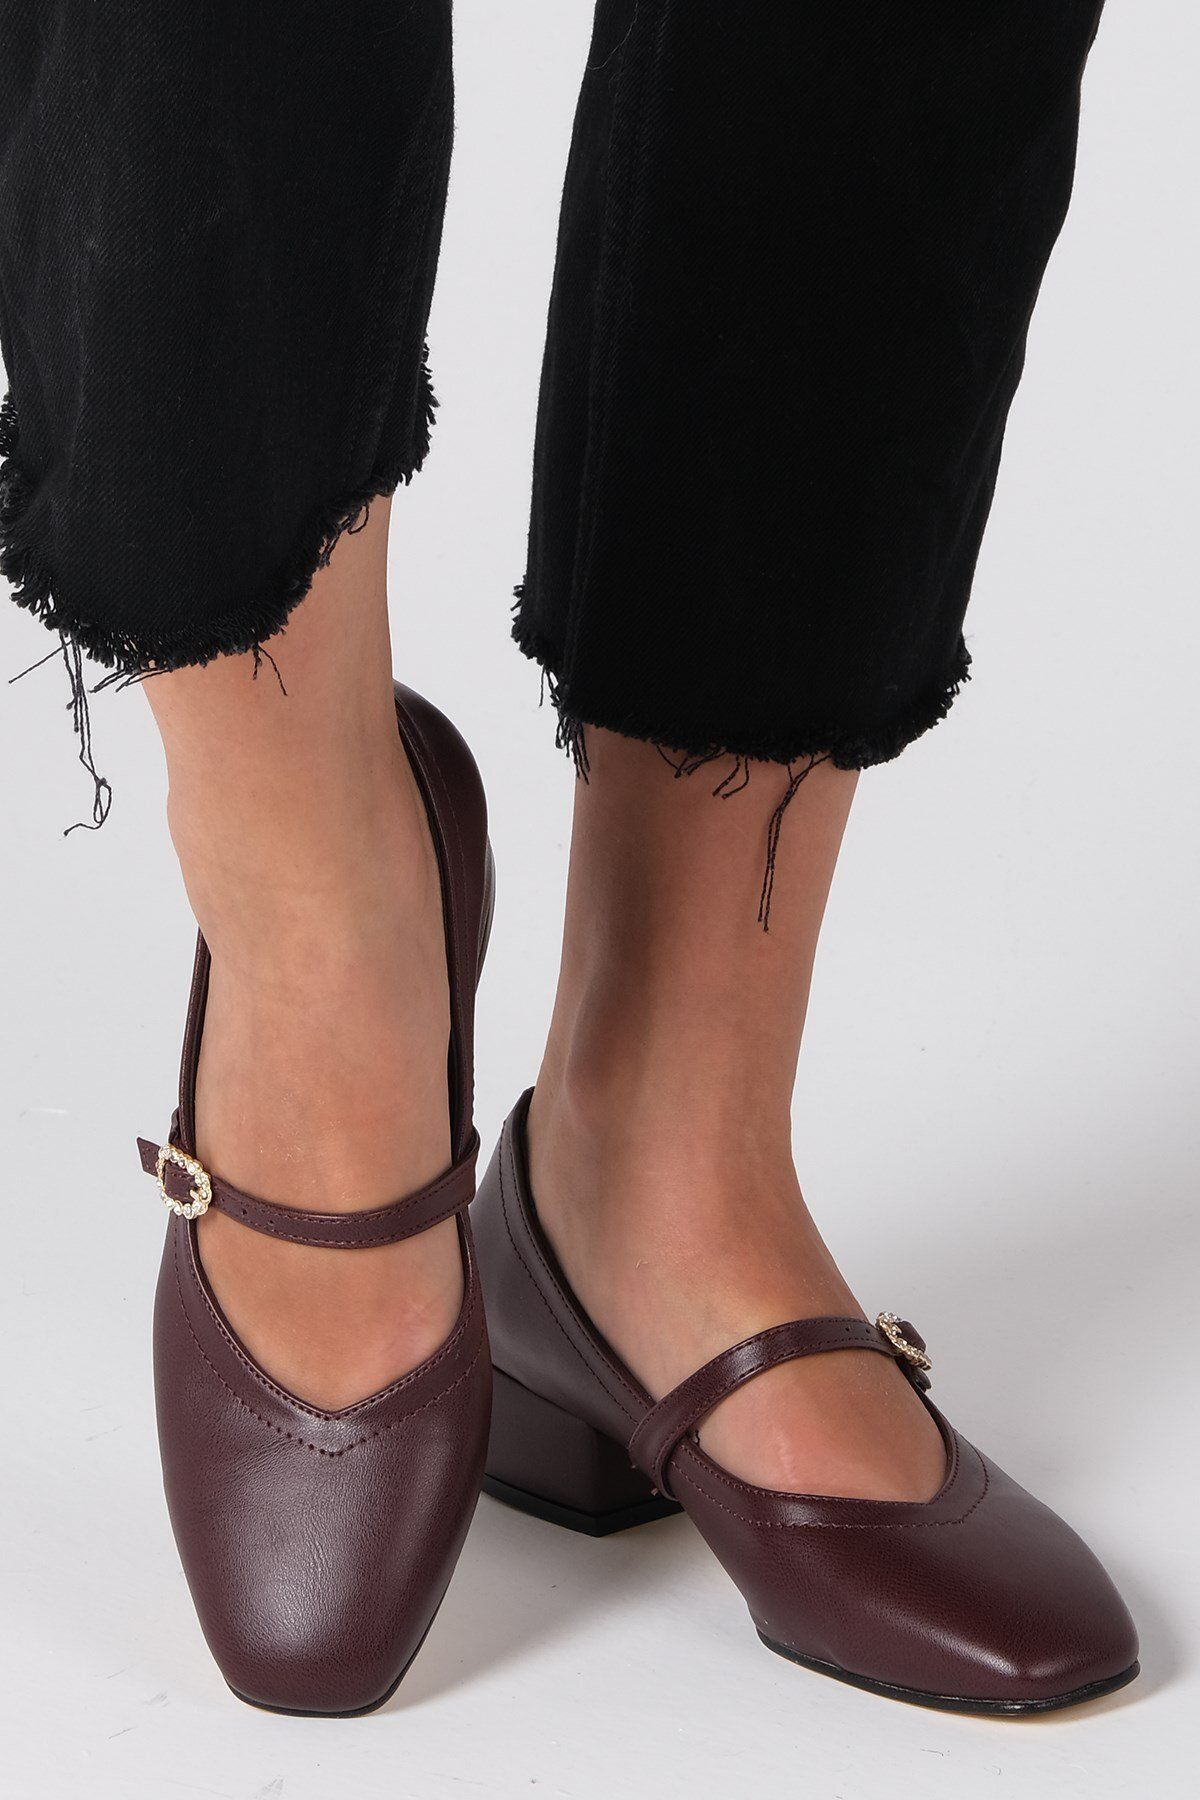 Mio Gusto Julia Bordo Renk Taşlı Tokalı Kadın Kısa Topuklu Ayakkabı